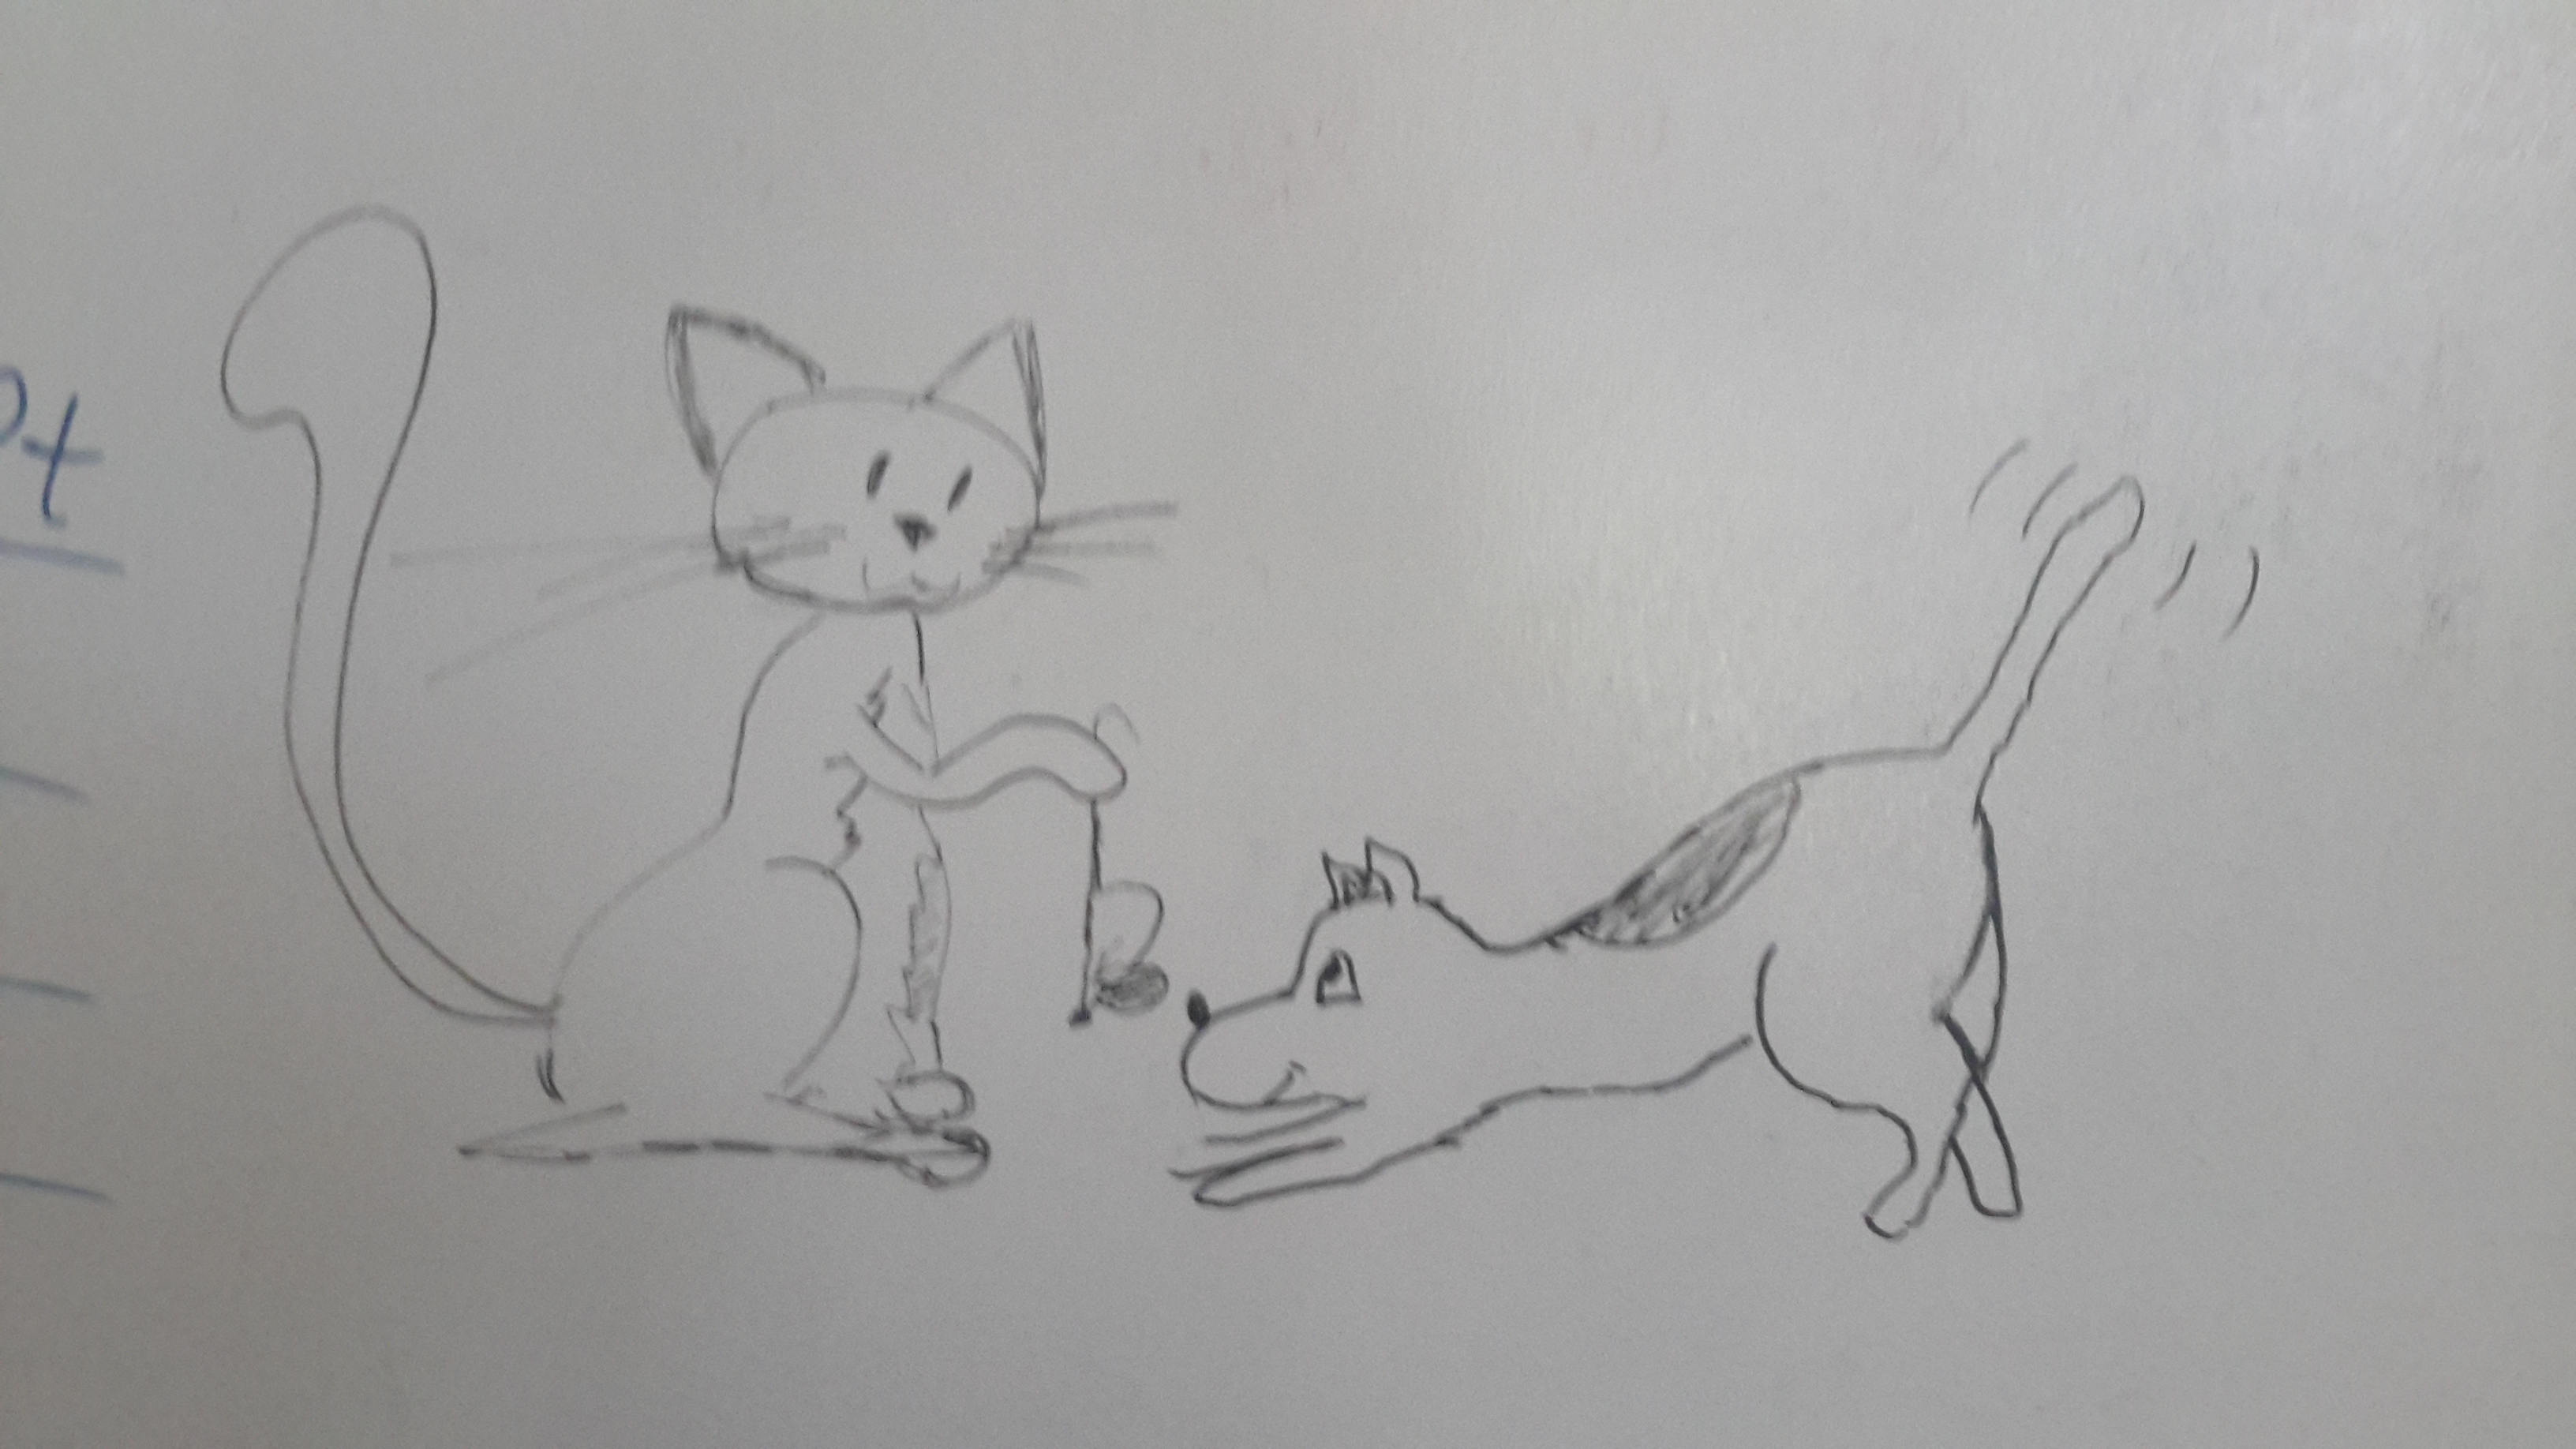 kot siedzi, trzymając w przedniej łapie mysz, która zwisa za ogonek. Z noskiem tuż przy myszy piesek z wypiętym w górę zadkiem, w pozycji zapraszającej do zabawy. - pies i kot - jak pies z kotem